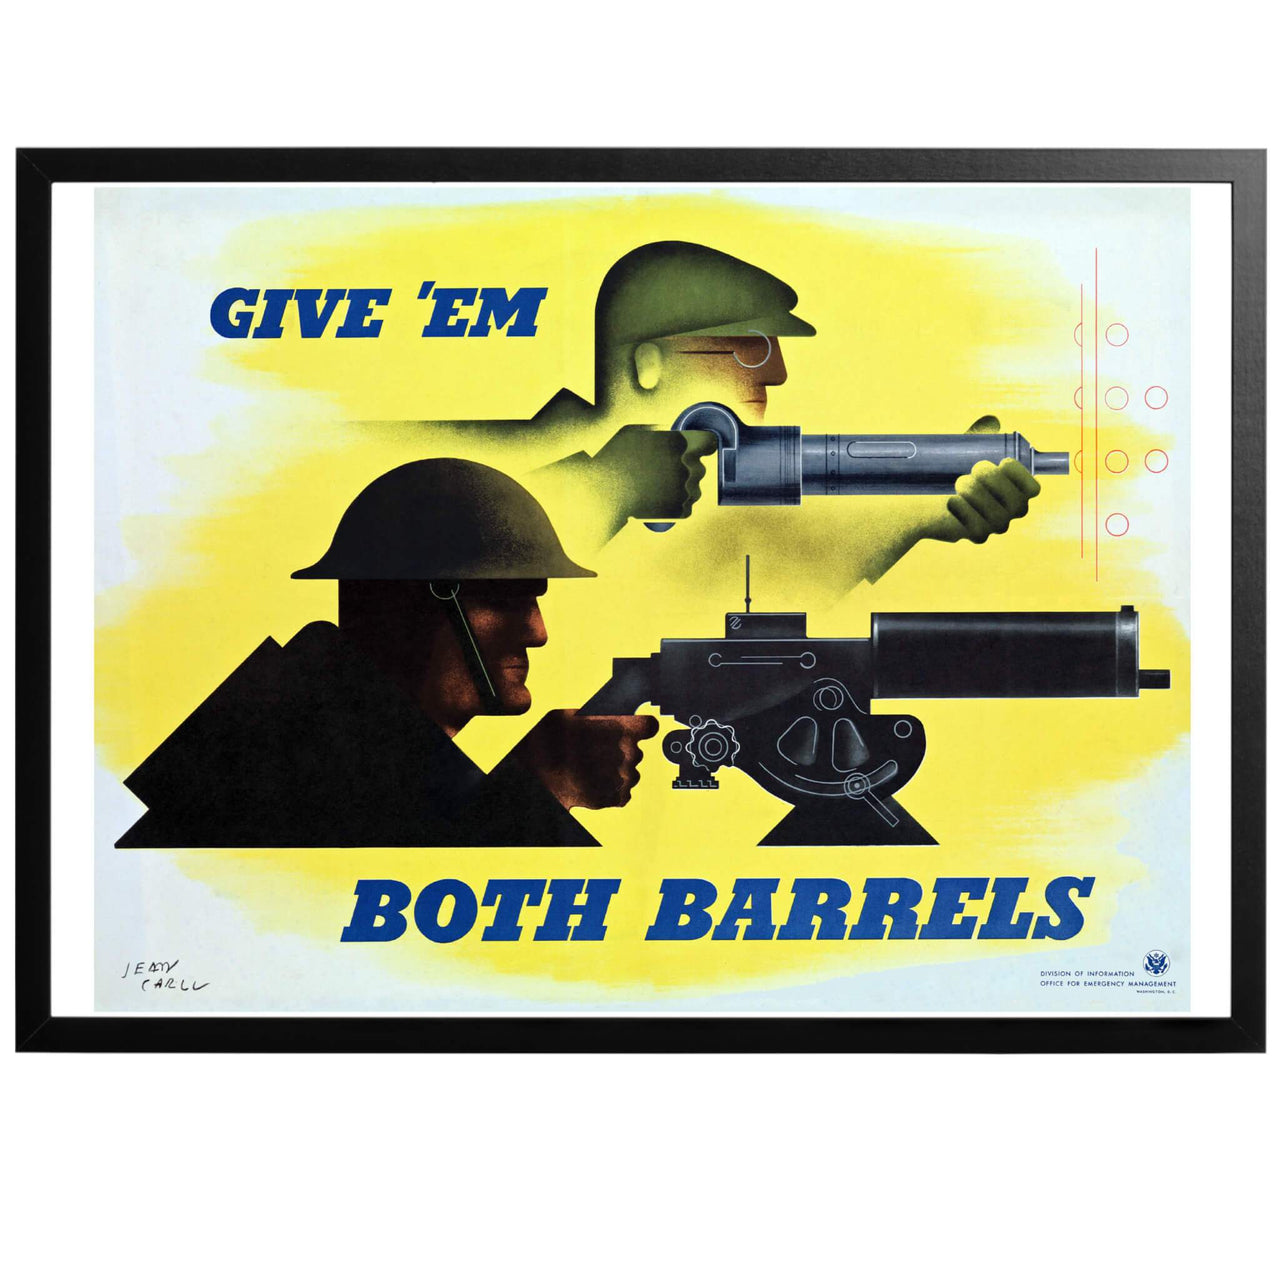 Give 'em both barrels - "Ge dem båda piporna" Amerikansk WWII affisch från 1941 Konstnär: Jean Carlu. En affisch som understryker hemmafrontens betydelse för krigsinsatsen. Både mannen i fabriken och soldaten på fältet måste ge allt! Köp till inramning - vi ramar in din poster, redo att sätta upp på väggen!